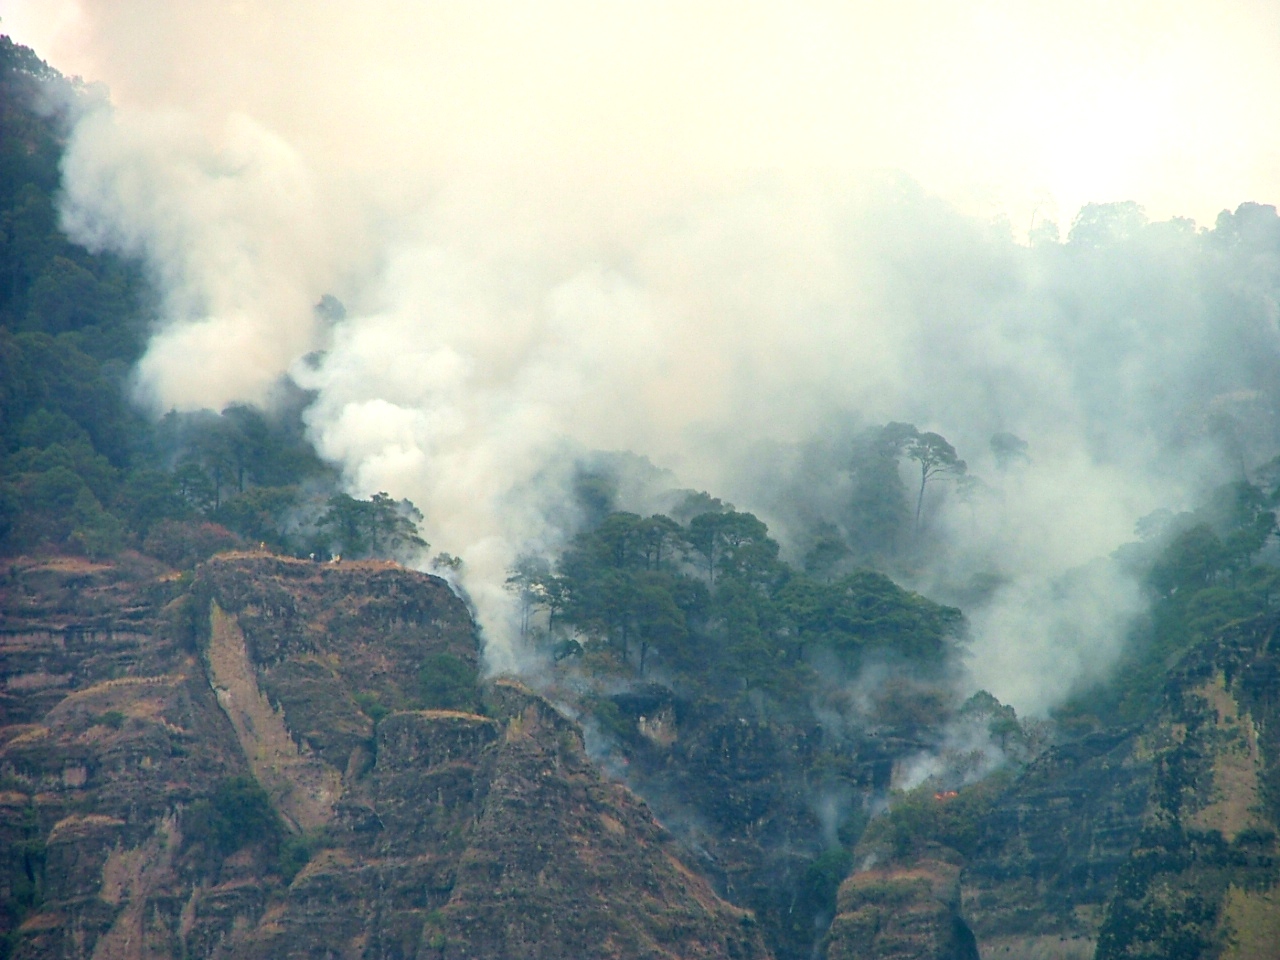  Localizan causante de incendio en Tepoztlán; el fuego, bajo control: Graco Ramírez